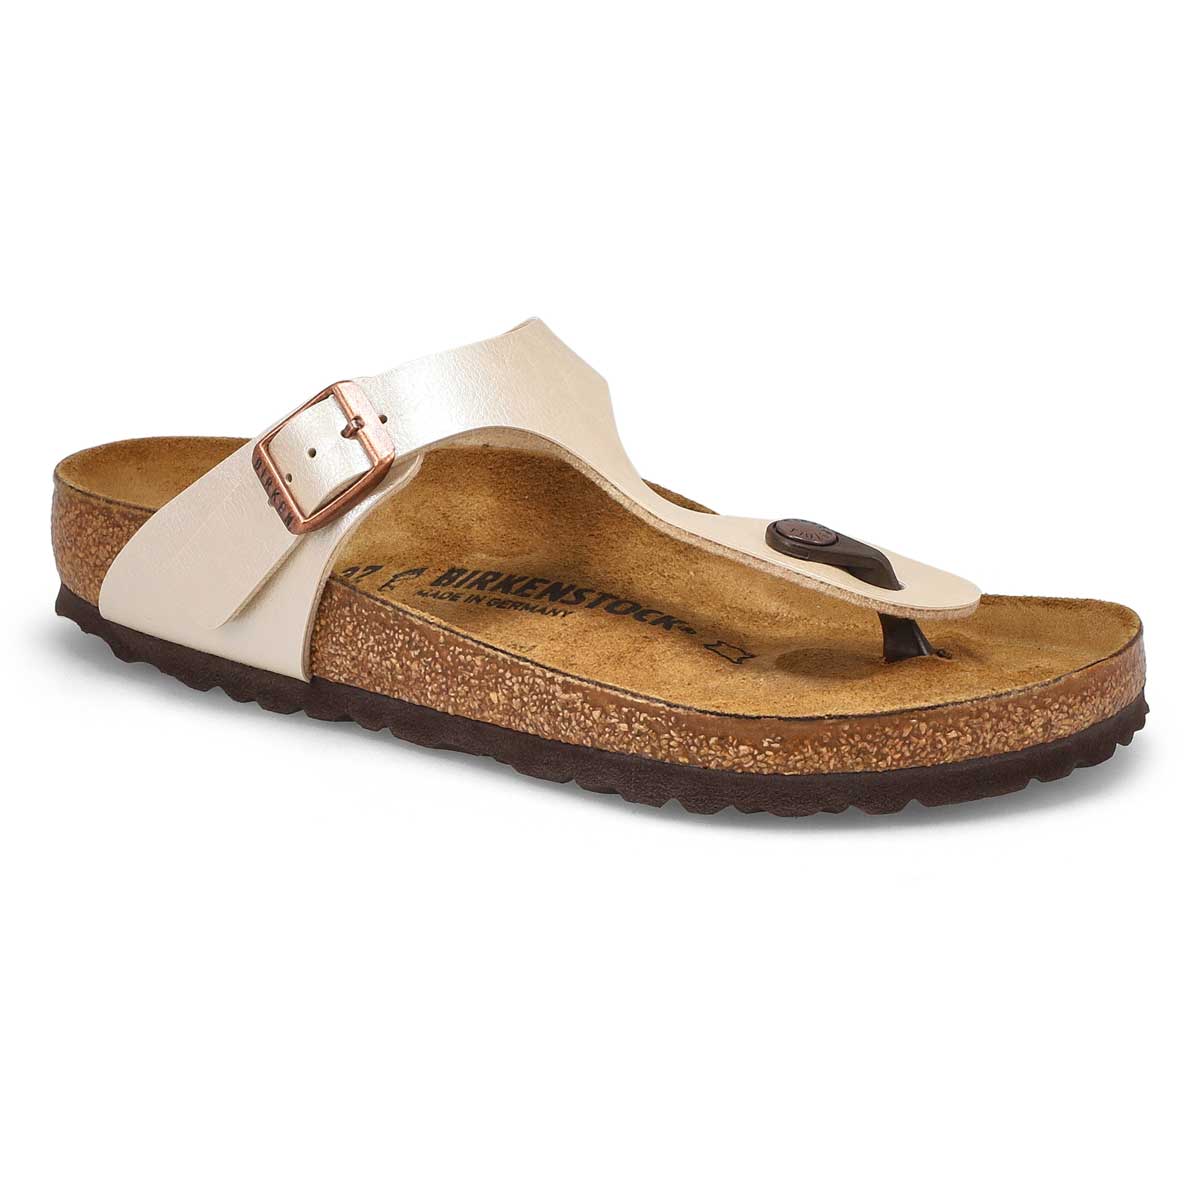 softmoc birkenstock sandals